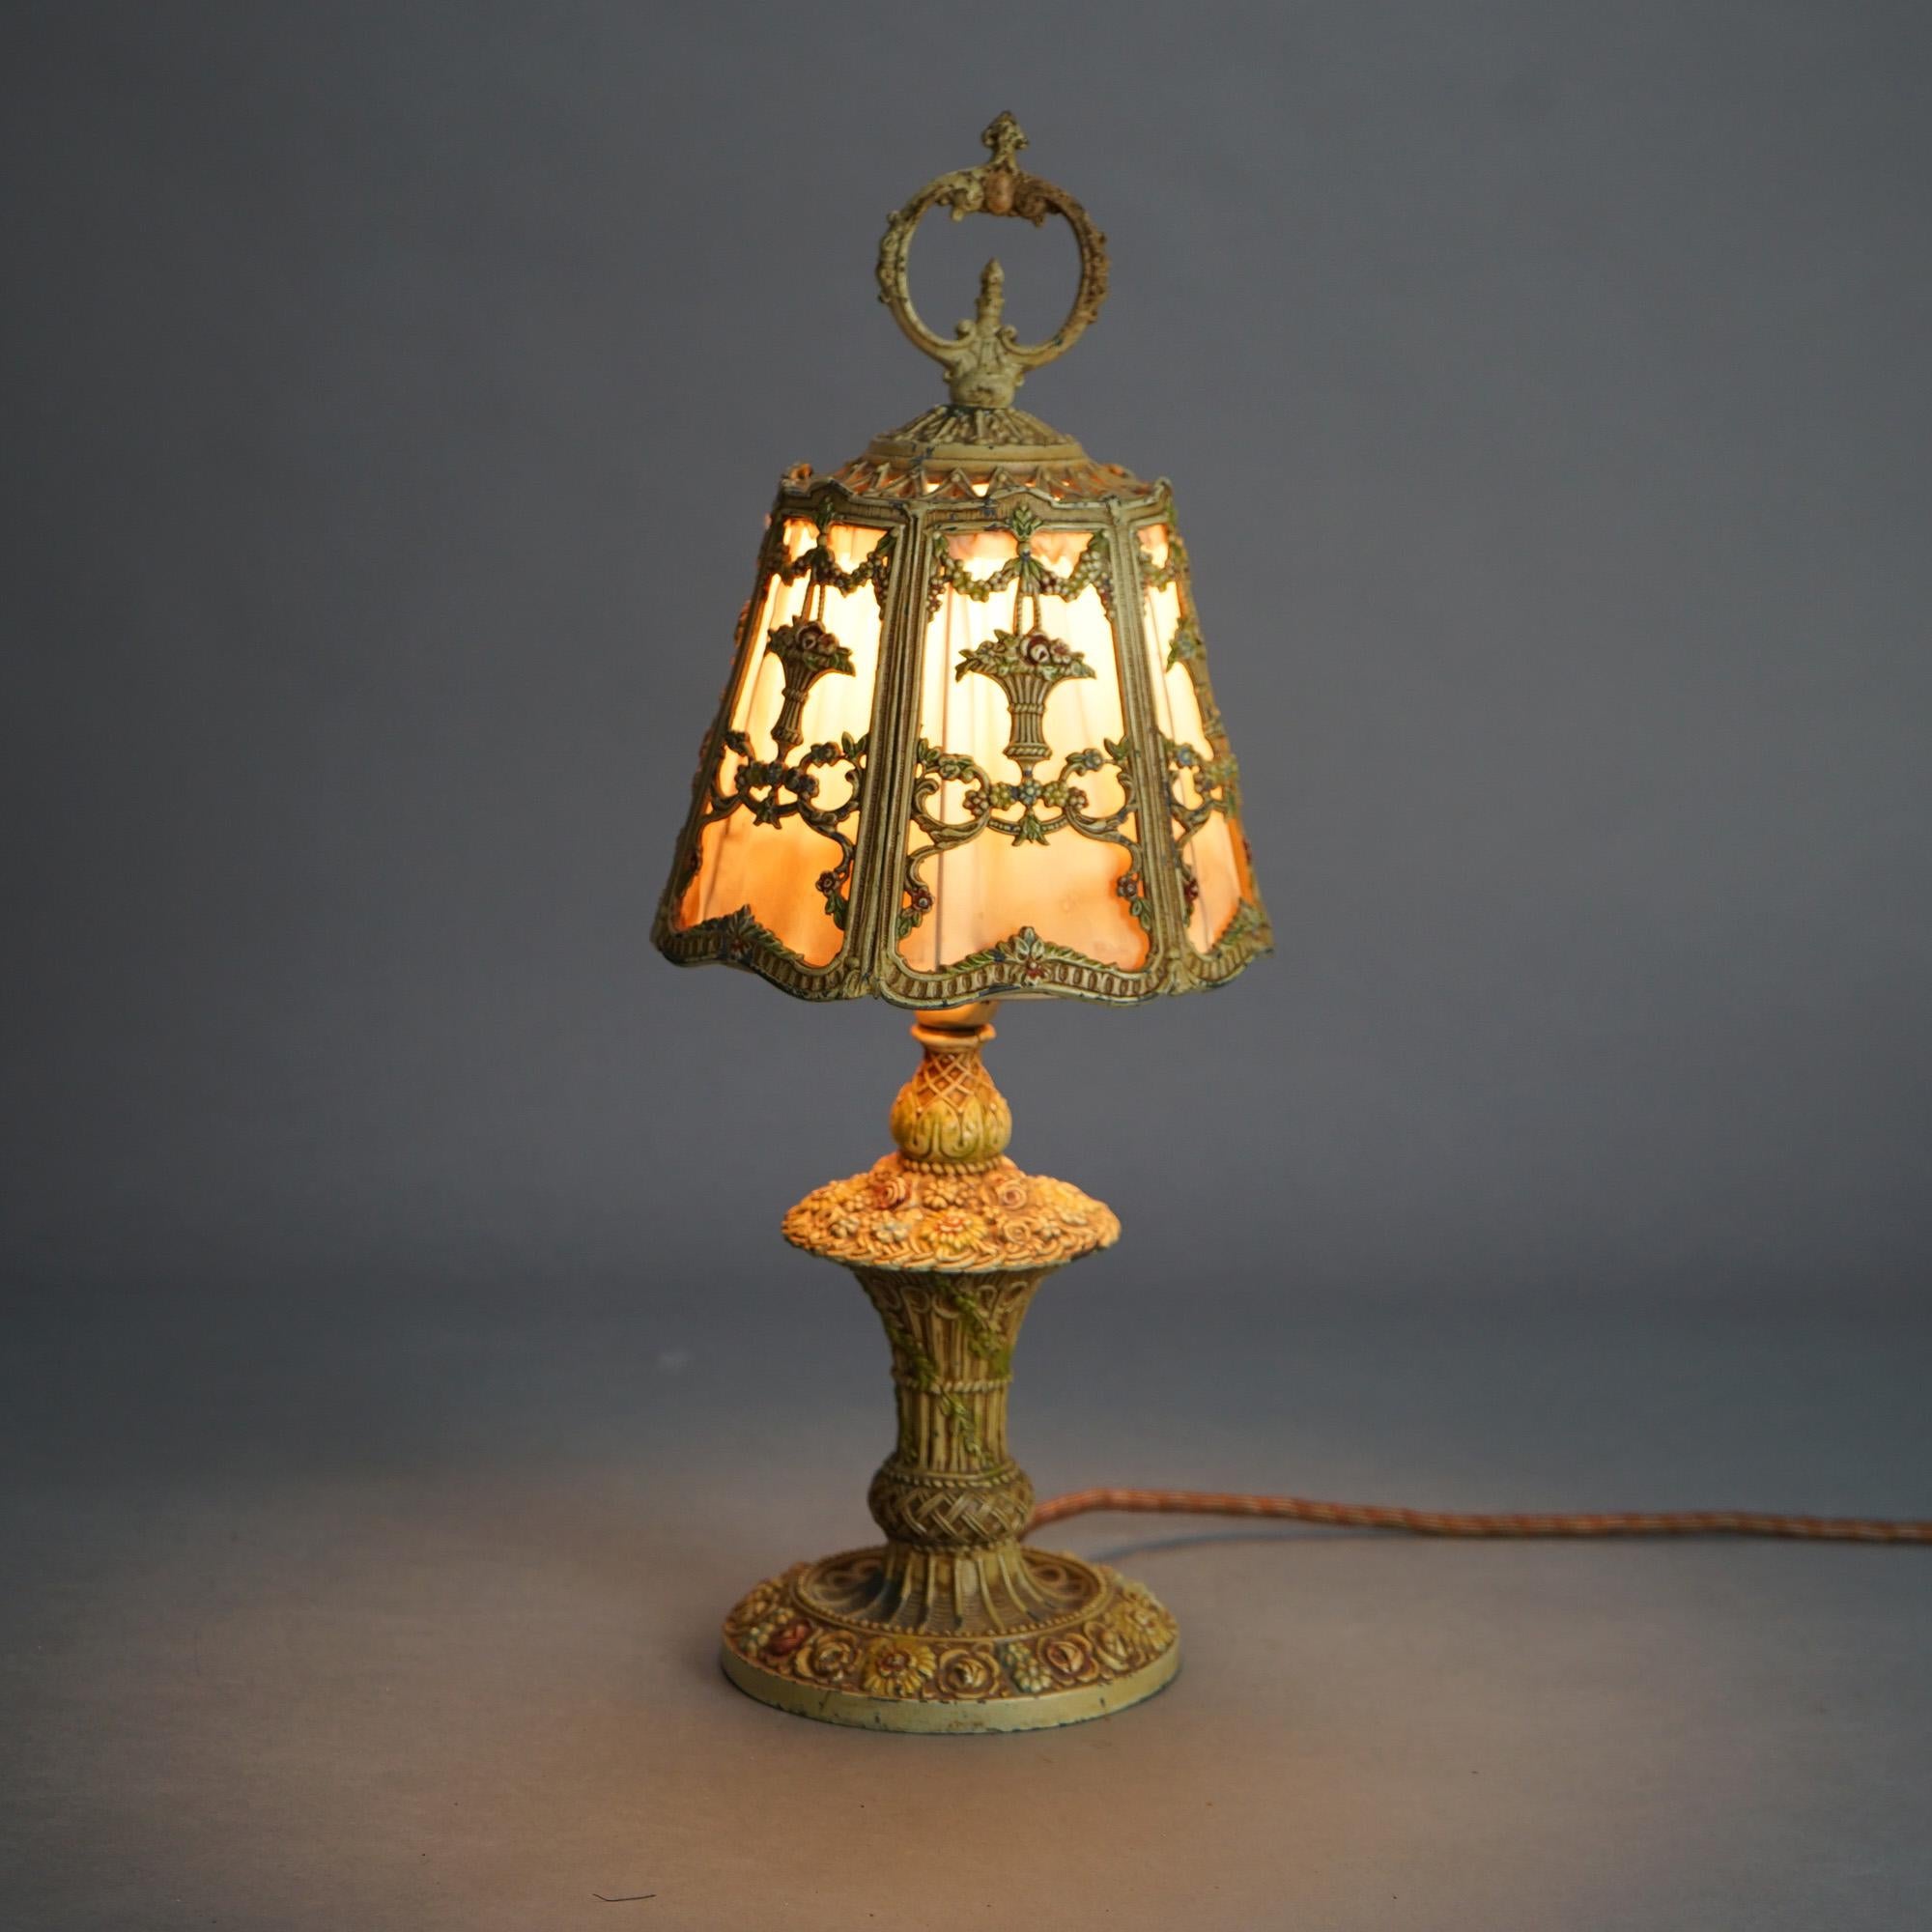 Ancienne lampe de table Panier de Fleurs polychrome à la manière de Bradley & Hubbard c1920

Dimensions - 18,5 